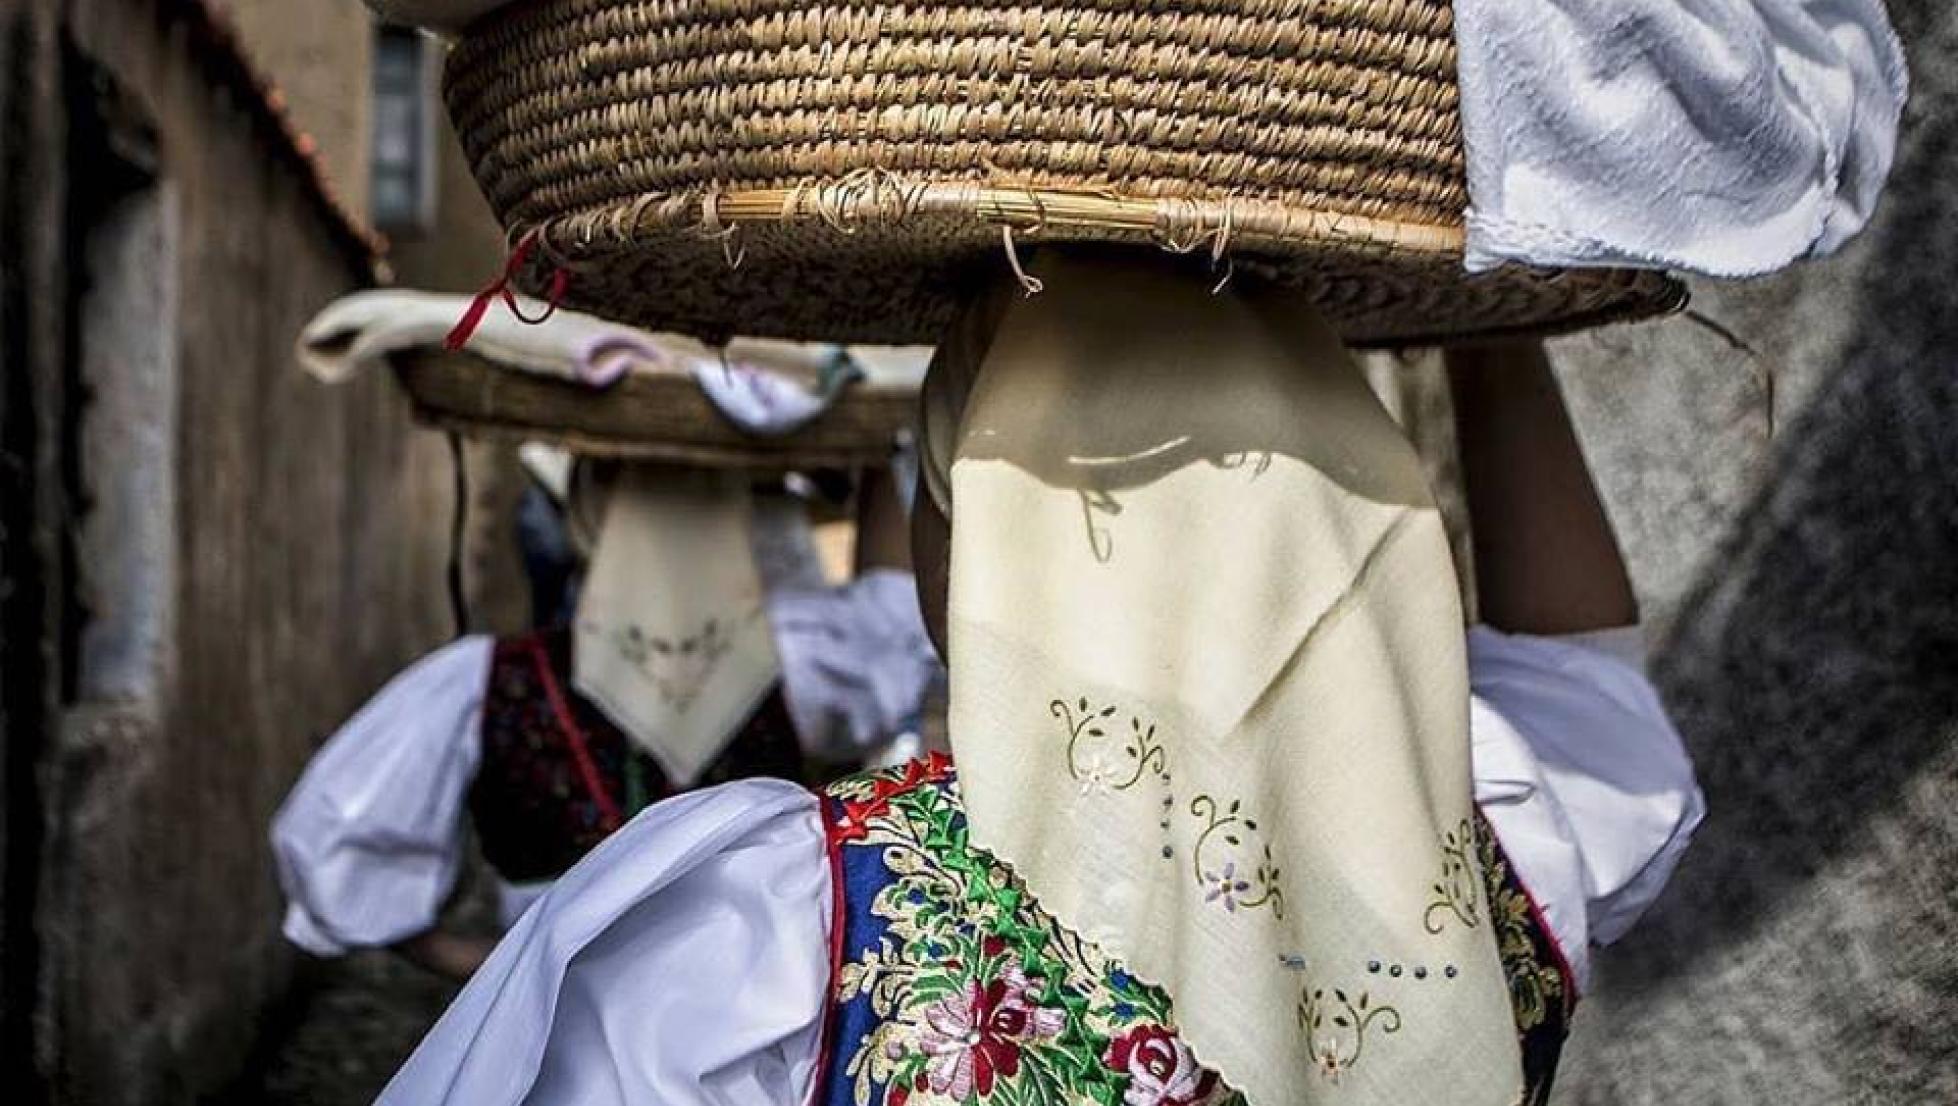 Donne in abito tradizionale - Meana Sardo